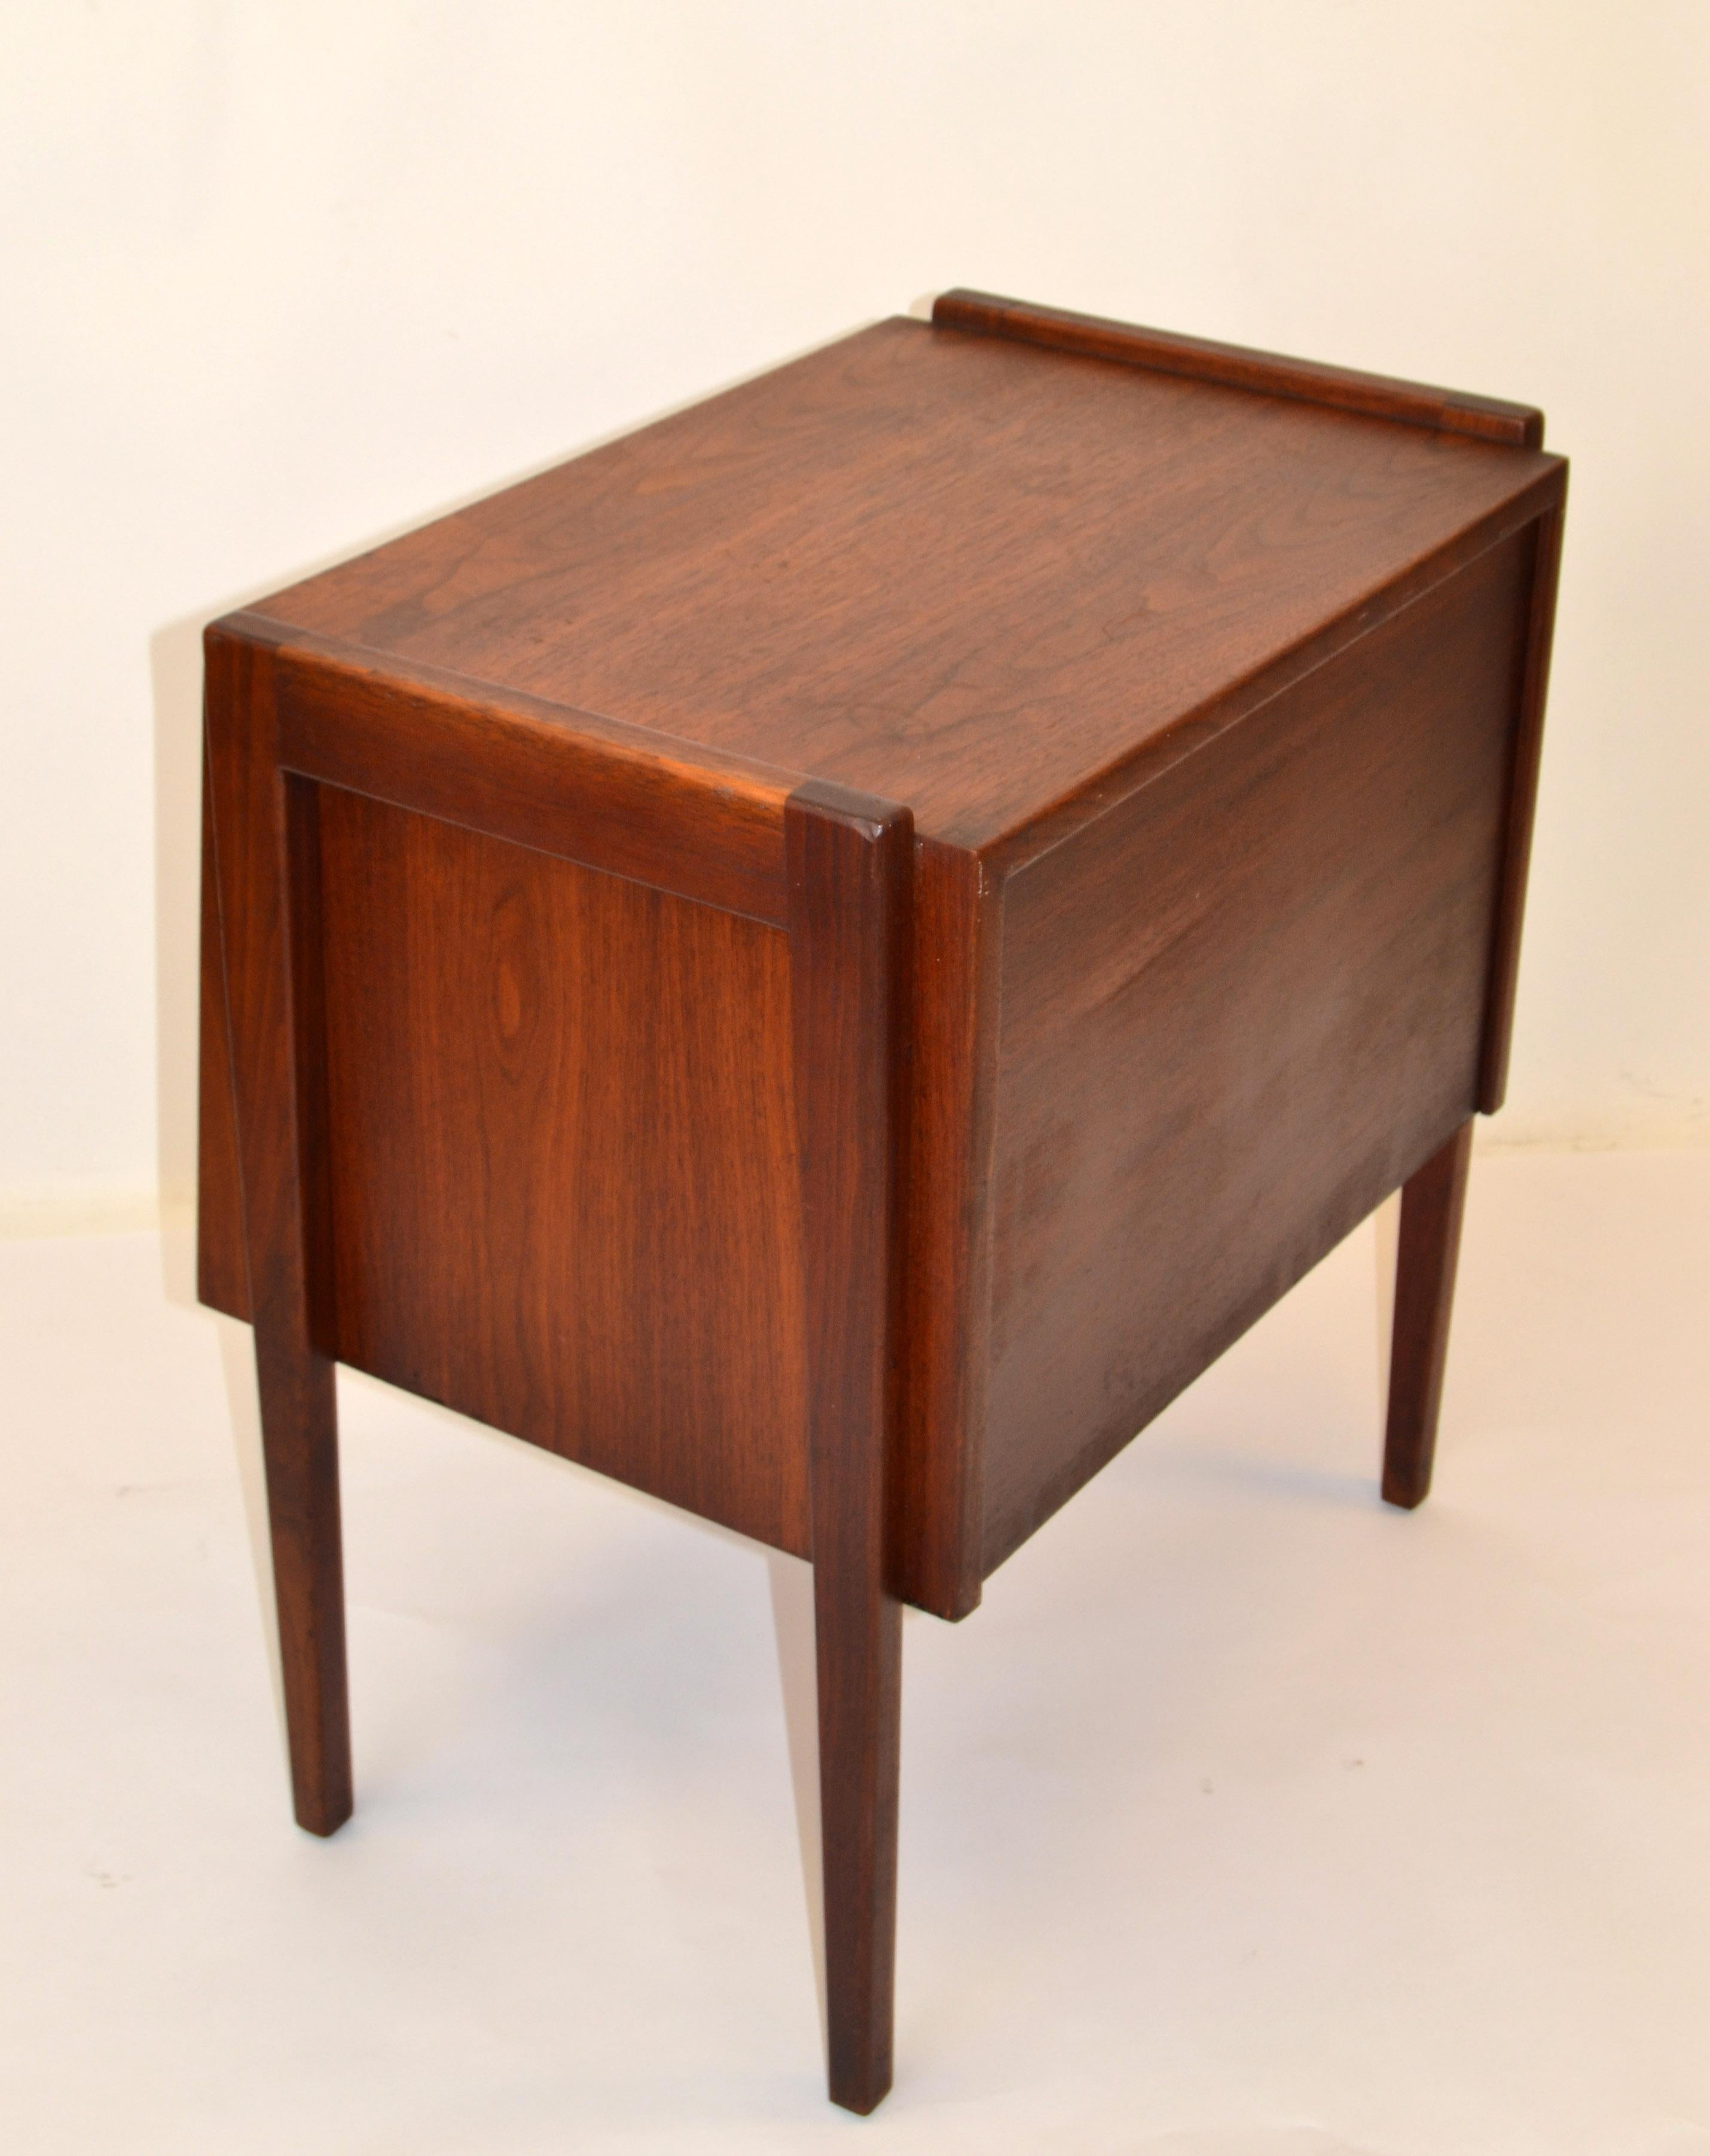 Jens Risom Scandinavian Modern Two-Tone Walnut Nightstand Bedside End Table 1950 For Sale 6